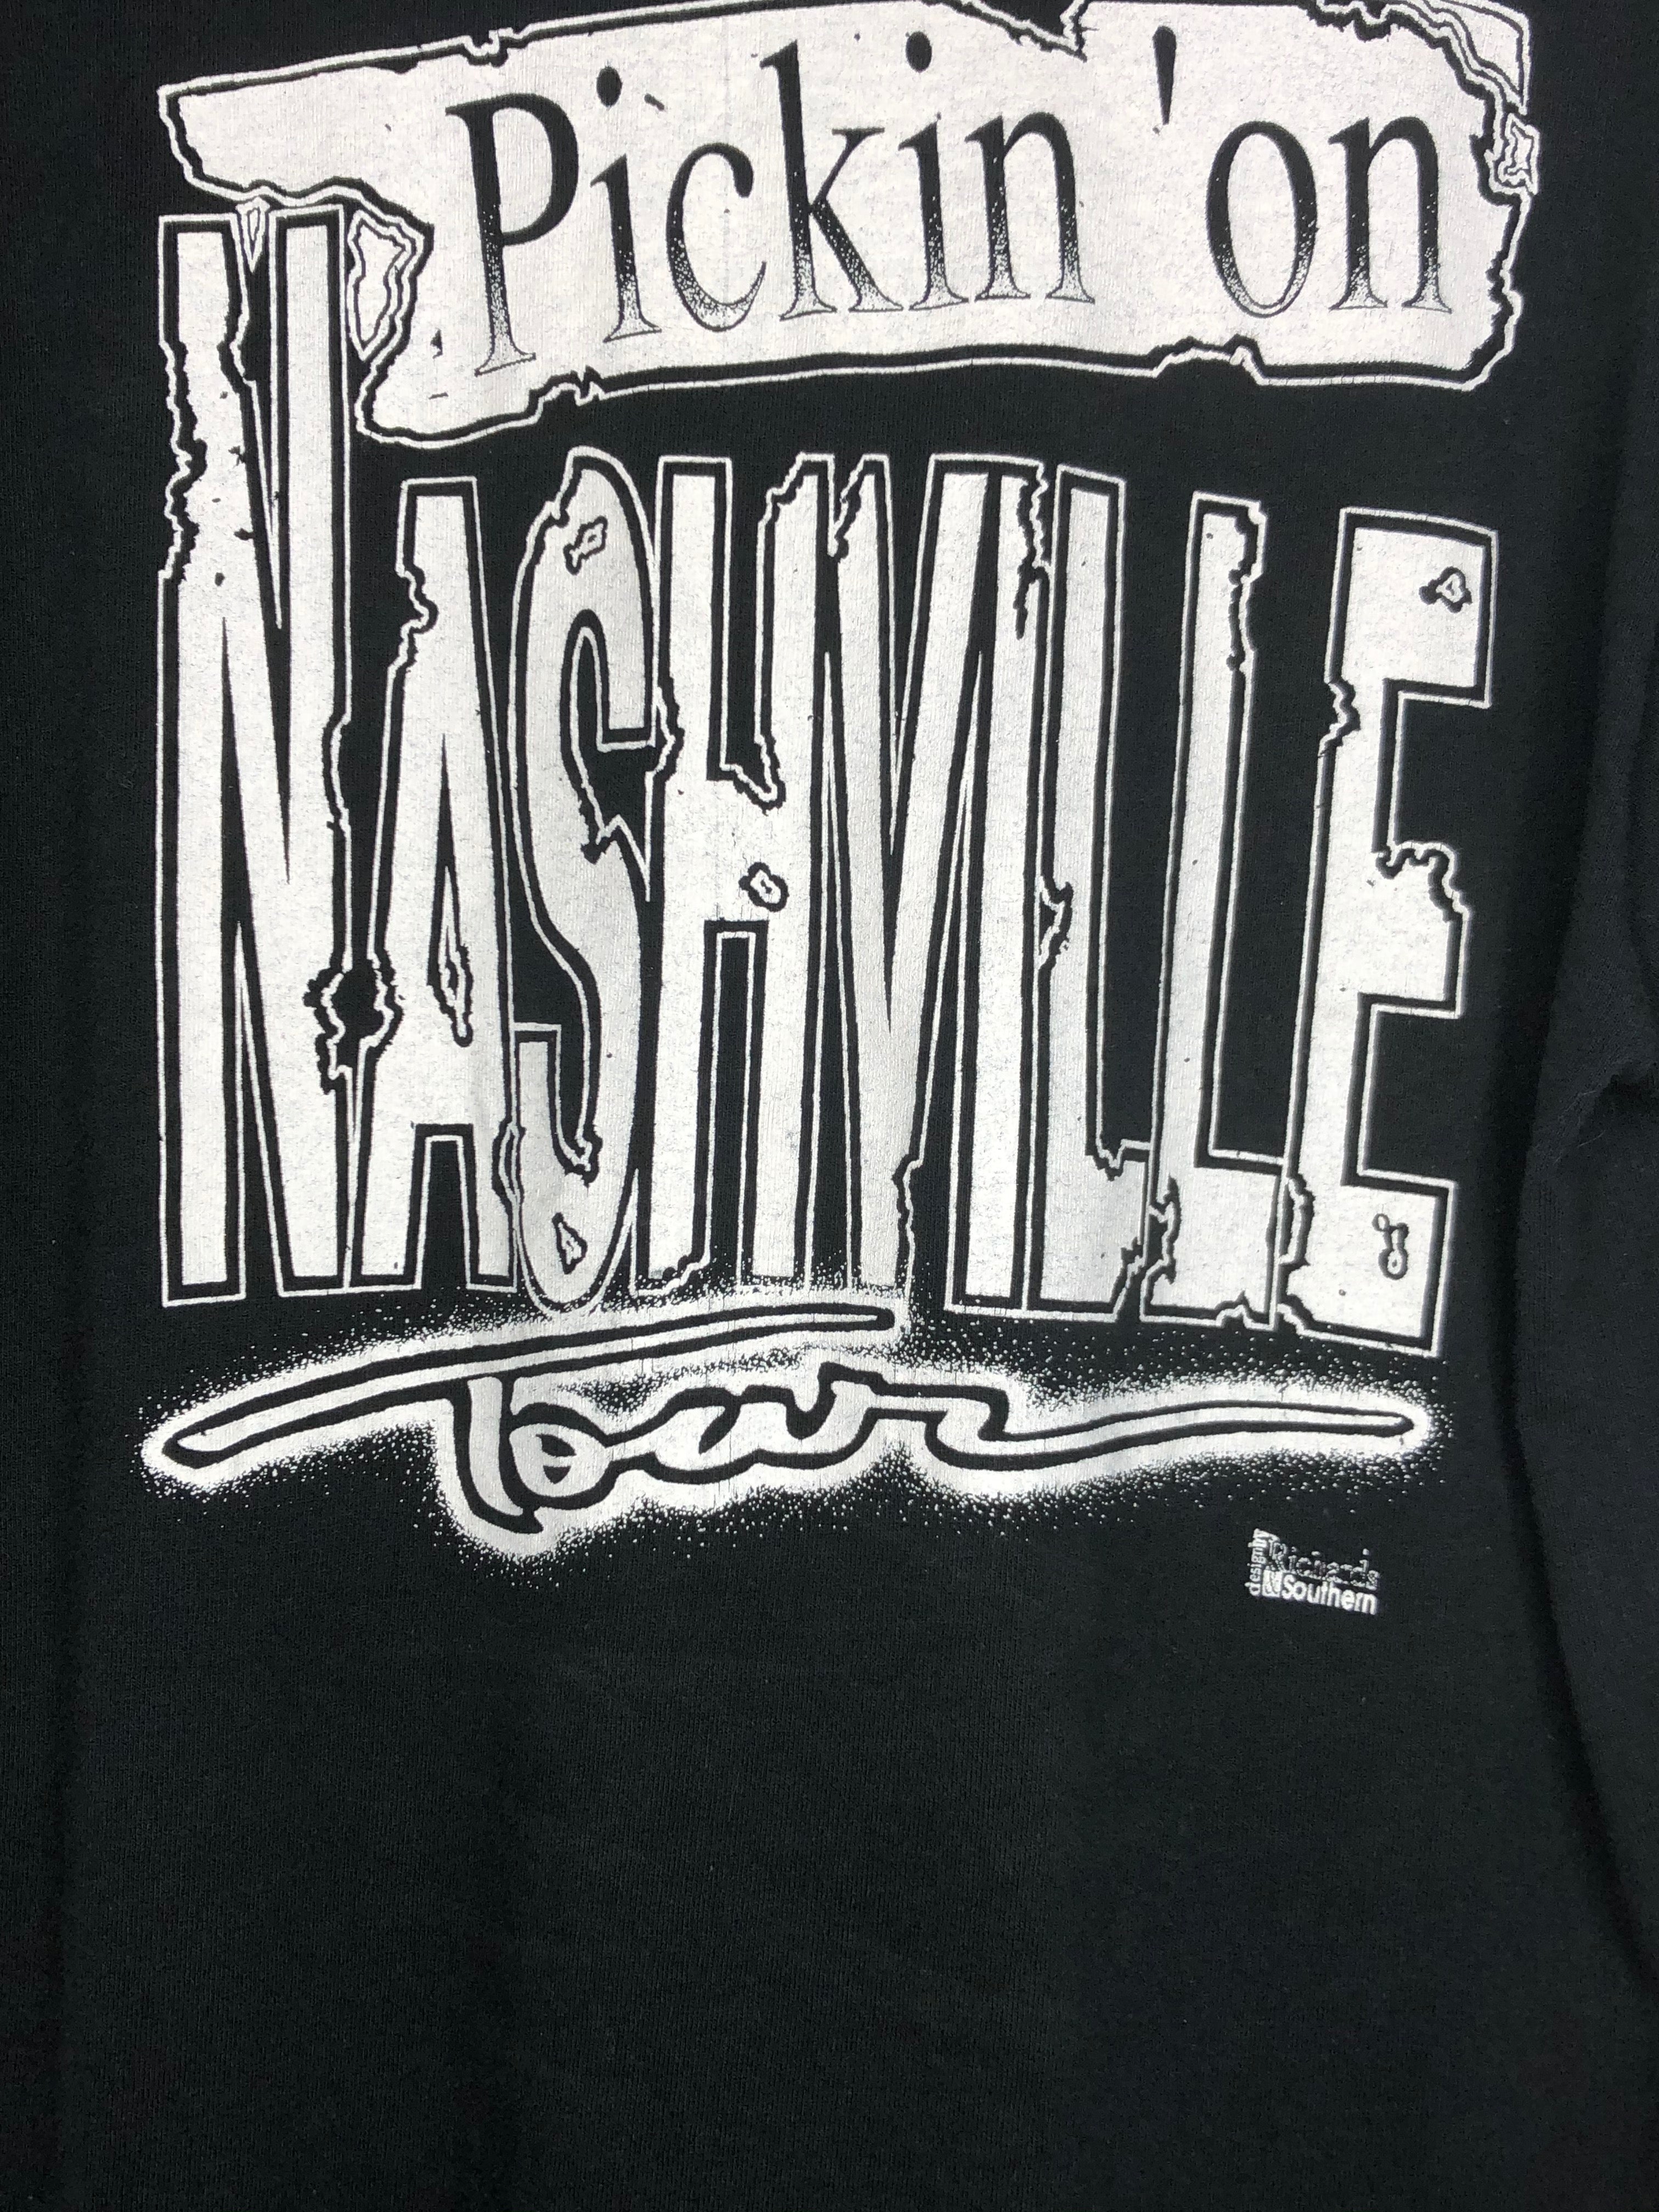 Authentic The Kentucky Headhunters Tour Tee- Picking On Nashville Tour ‘89 -‘90